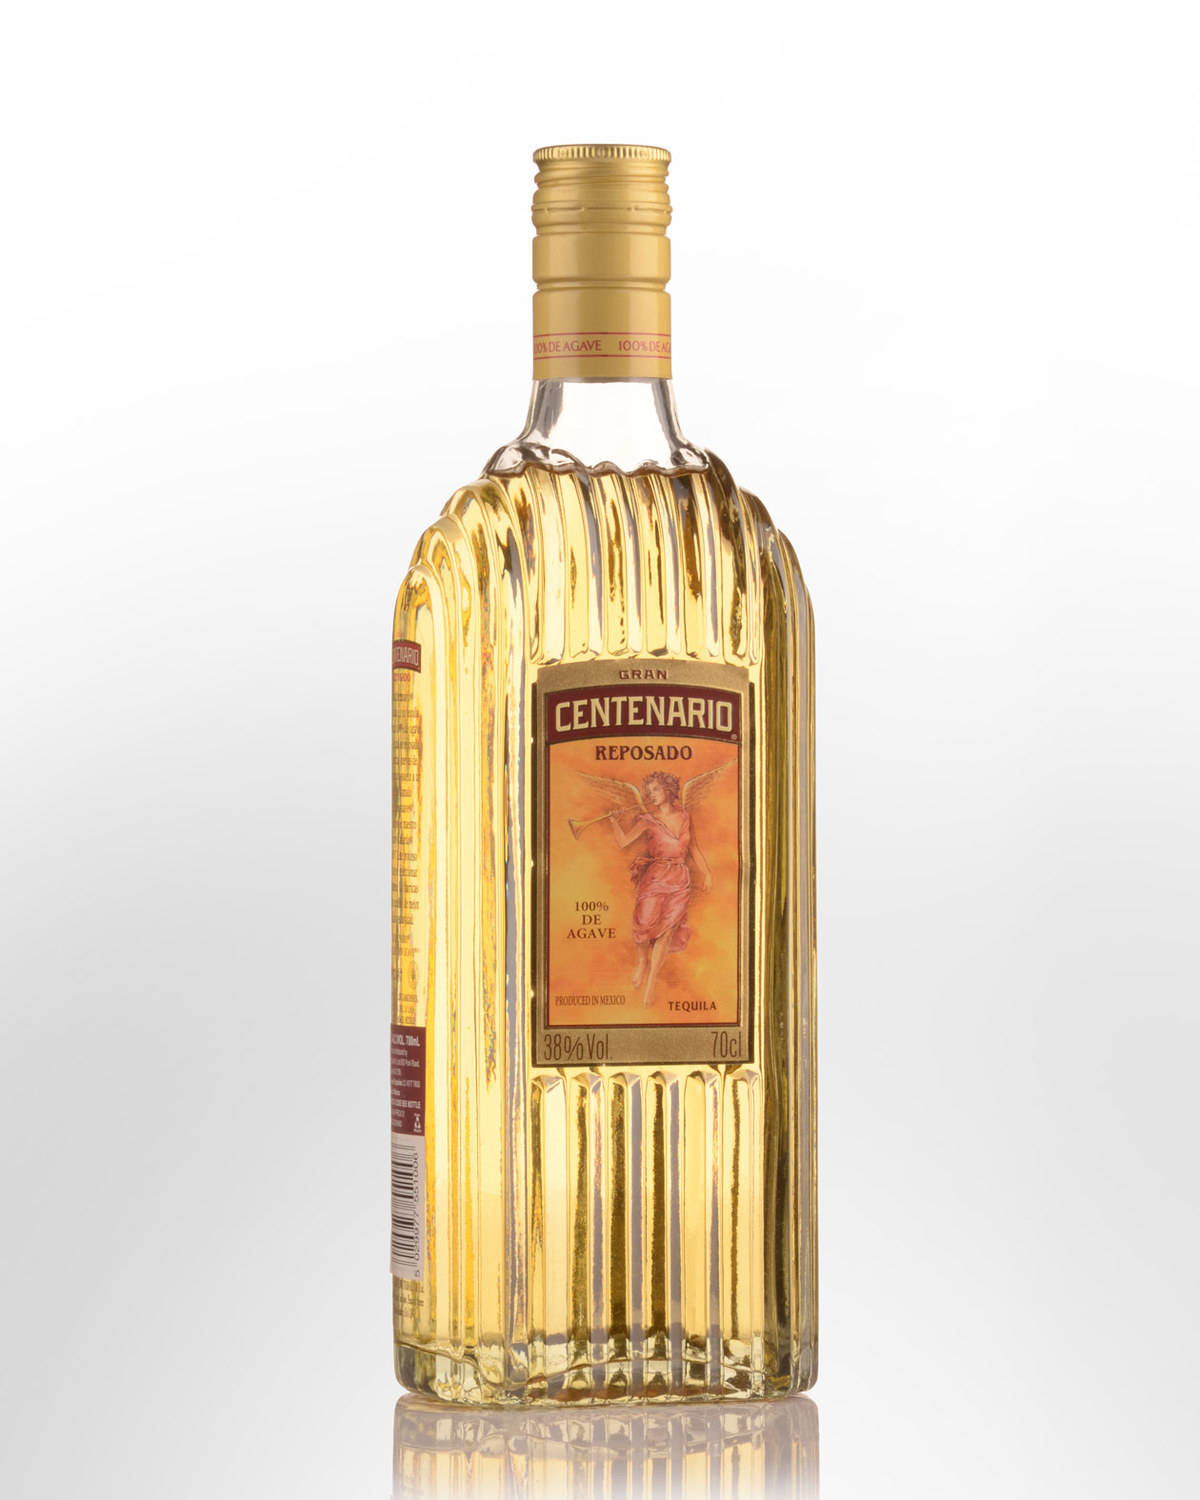 Gran Centenario Tequila Reposado Bottle Wallpaper